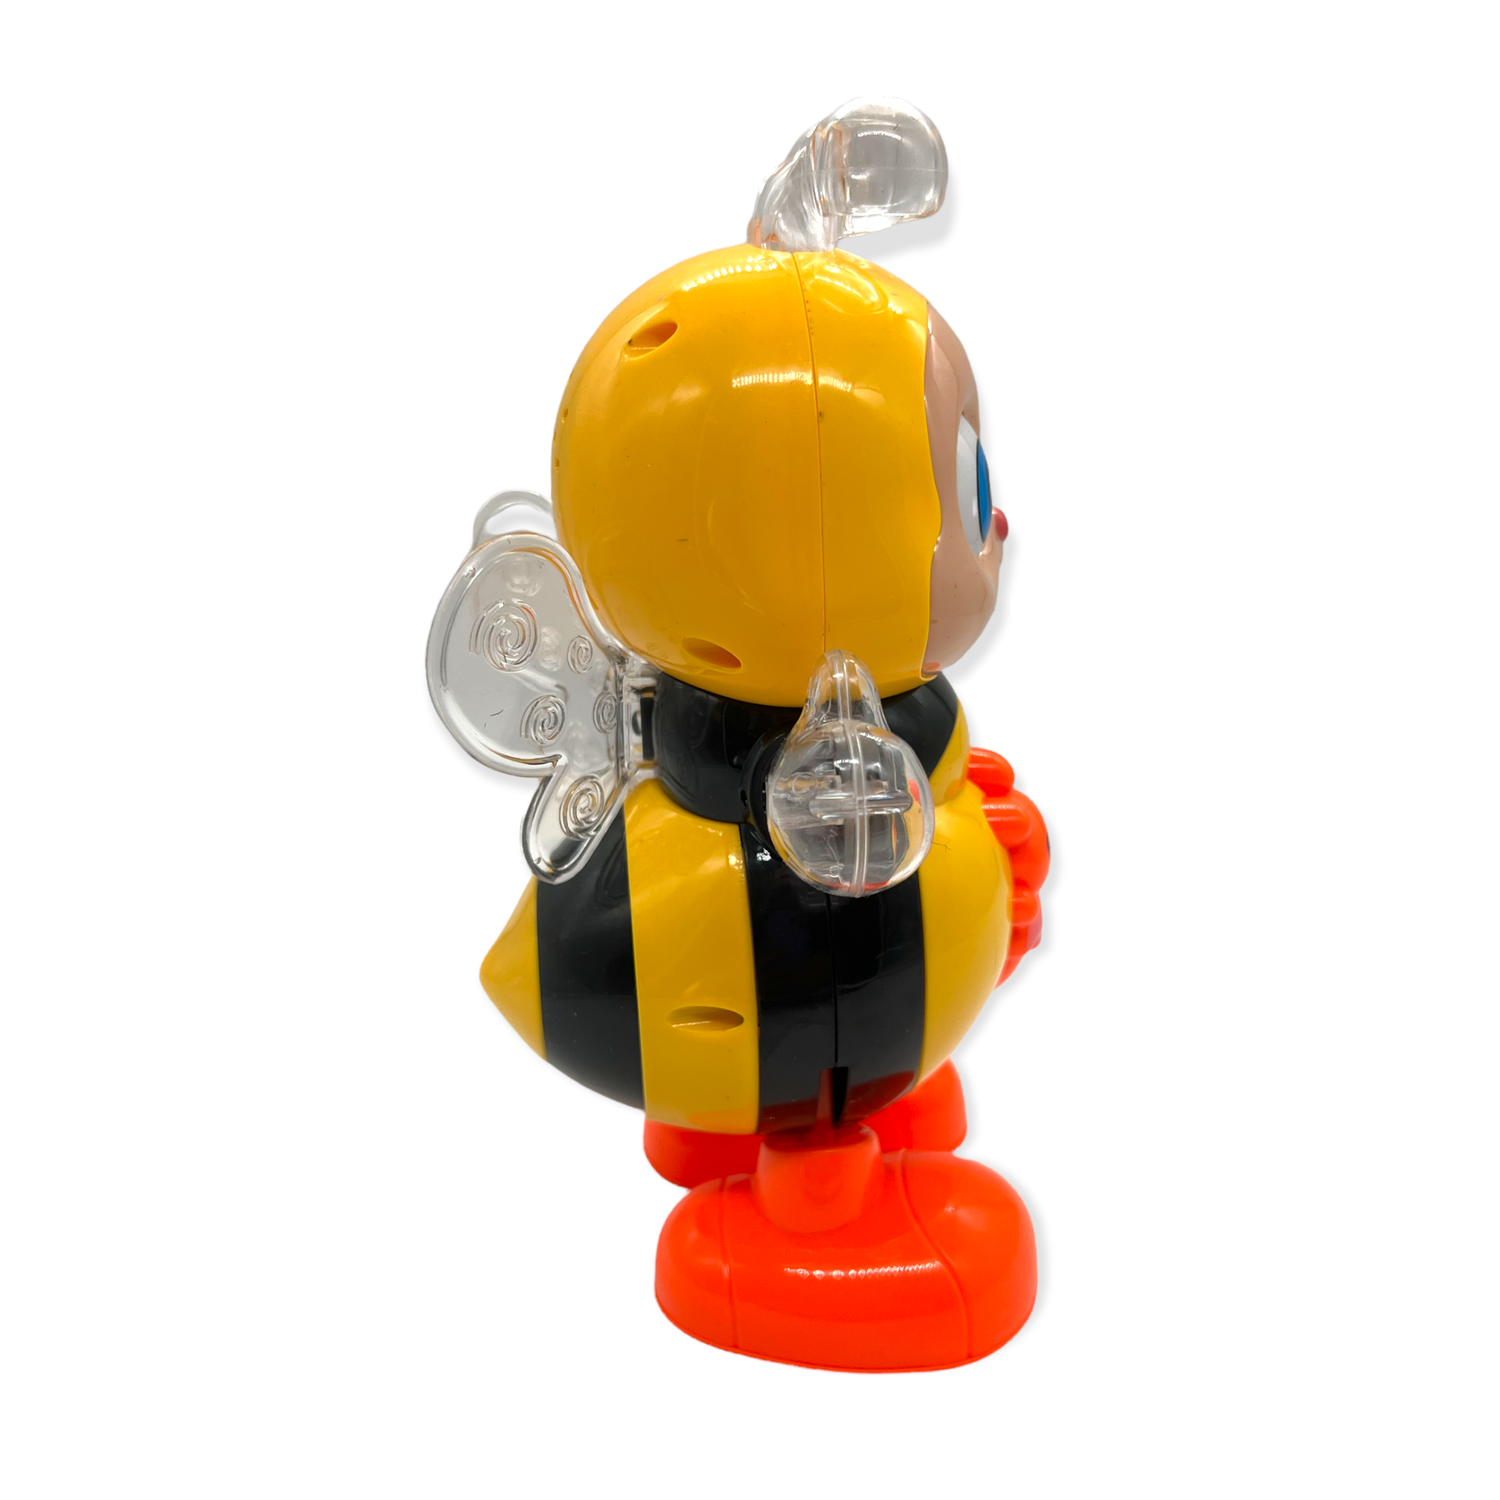 Интерактивная игрушка Пчелка Panawealth International со световыми и музыкальными эффектами - фото 2